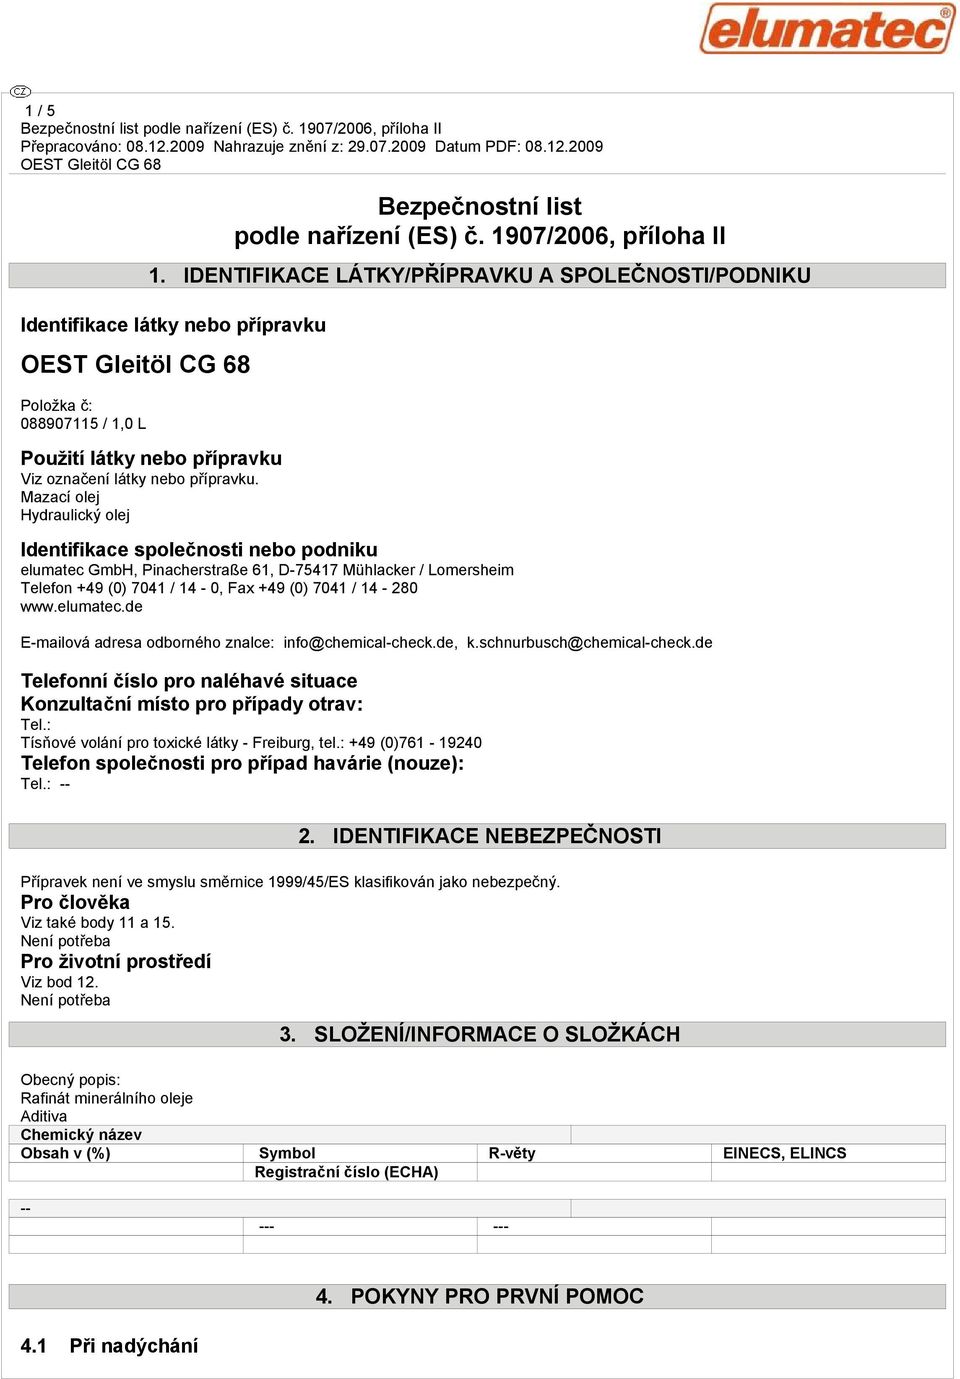 Mazací olej Hydraulický olej Identifikace společnosti nebo podniku elumatec GmbH, Pinacherstraße 61, D-75417 Mühlacker / Lomersheim Telefon +49 (0) 7041 / 14-0, Fax +49 (0) 7041 / 14-280 www.elumatec.de E-mailová adresa odborného znalce: info@chemical-check.